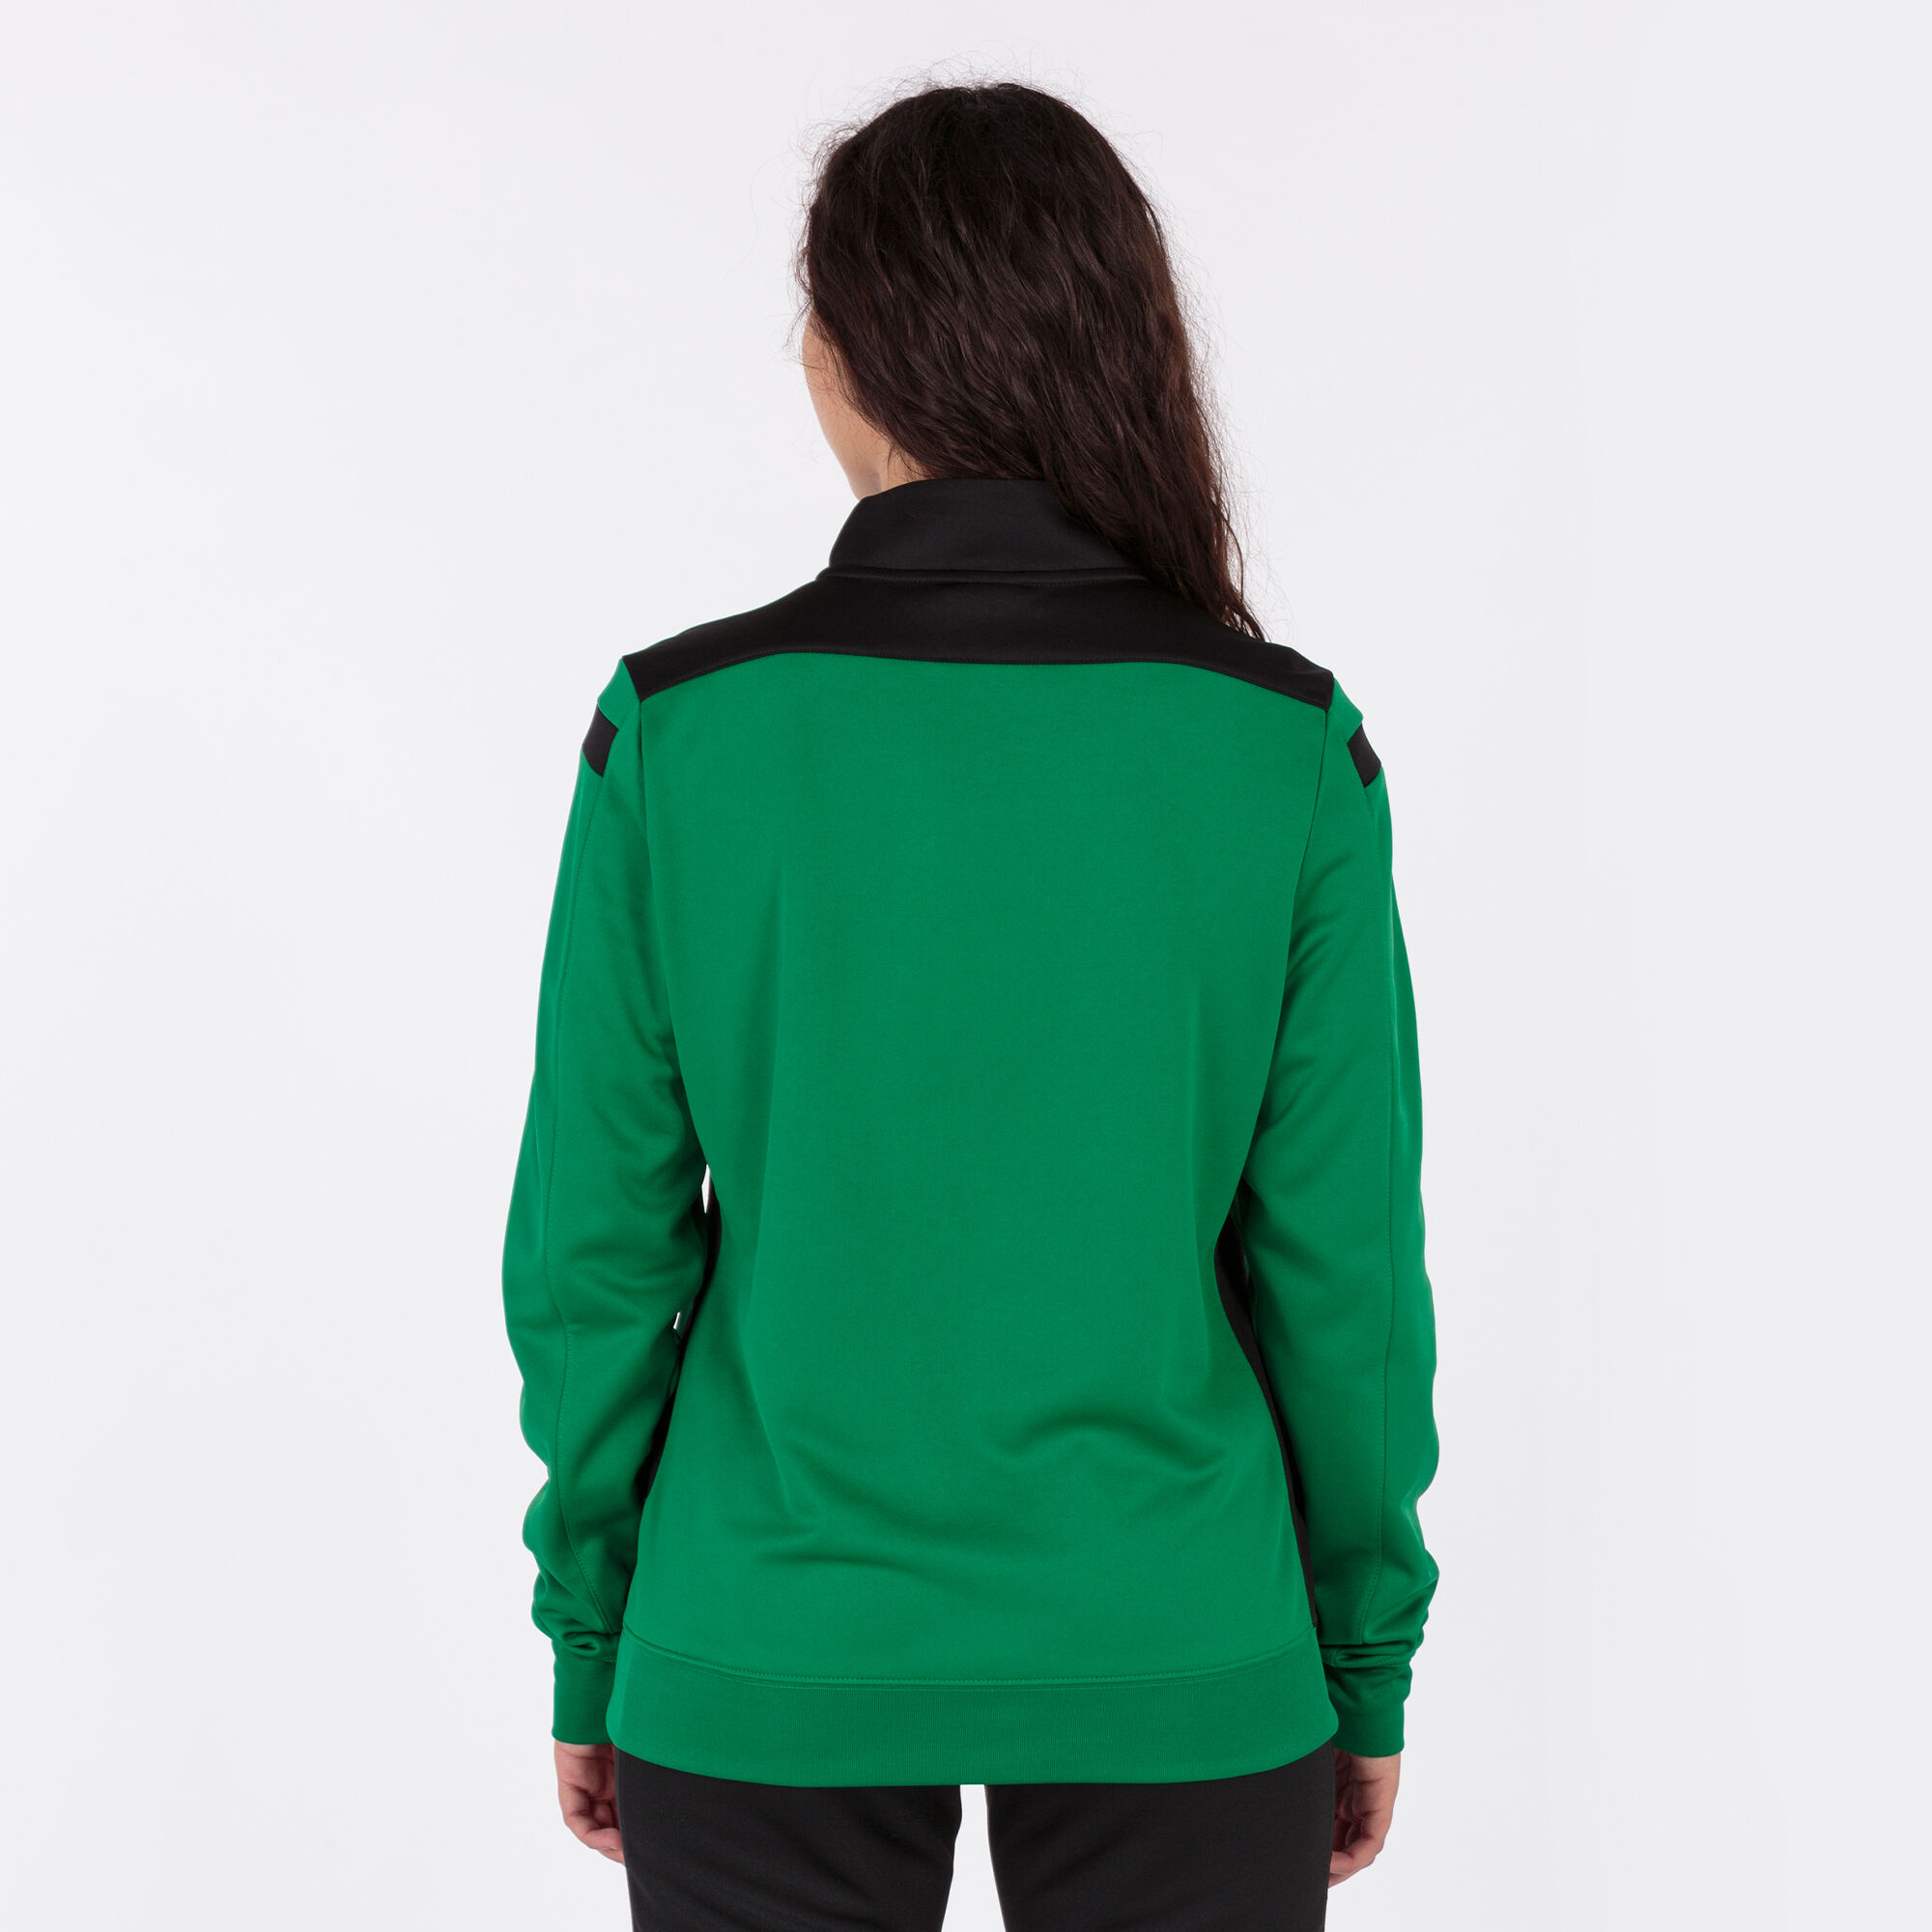 Sweat-shirt femme Championship VI vert noir